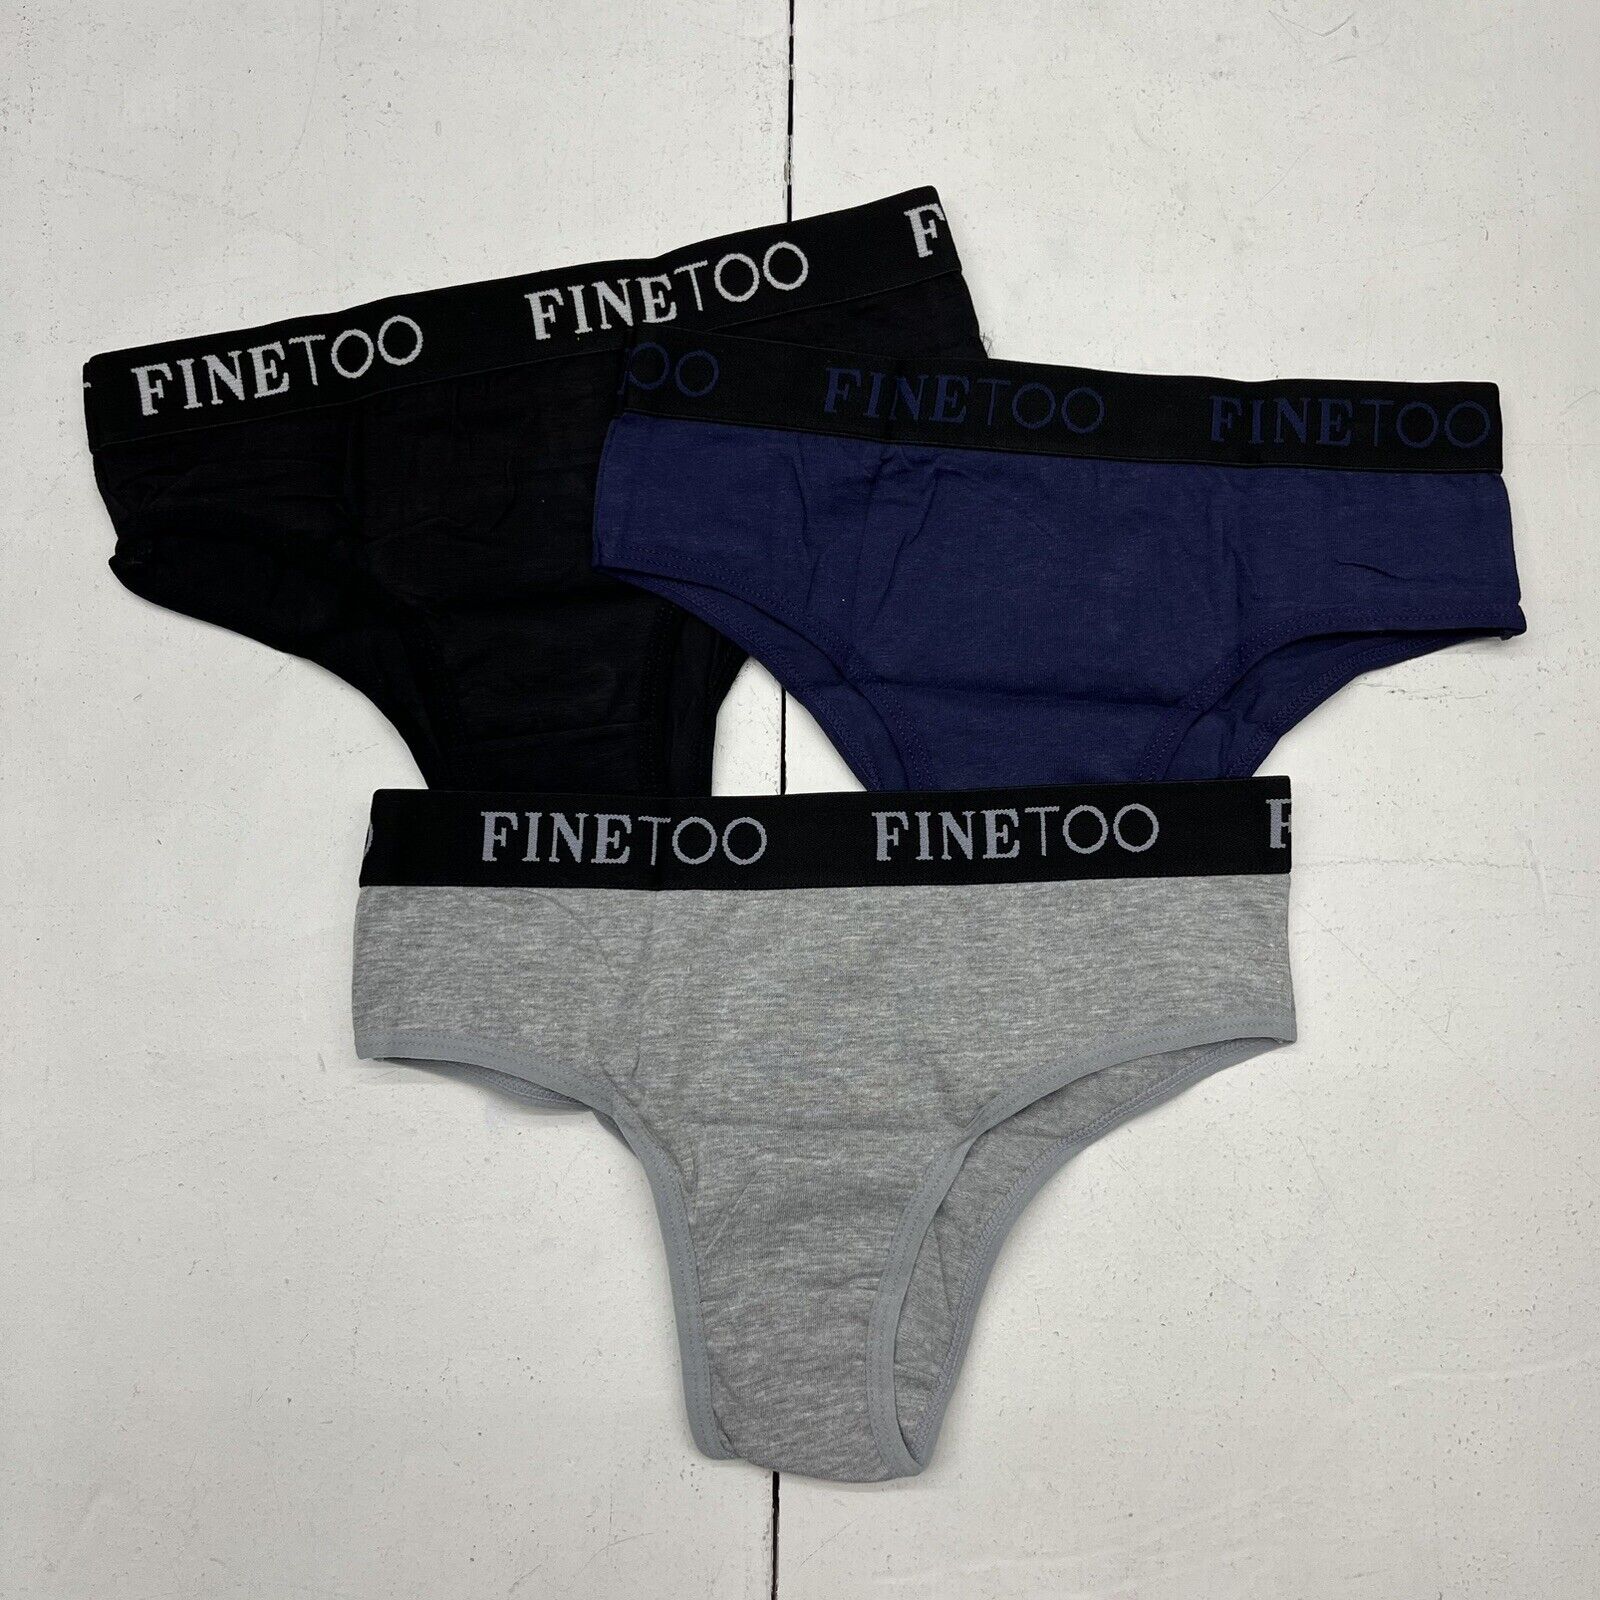 FINETOO 3Pack Period Underwear for Women High Waist Cotton